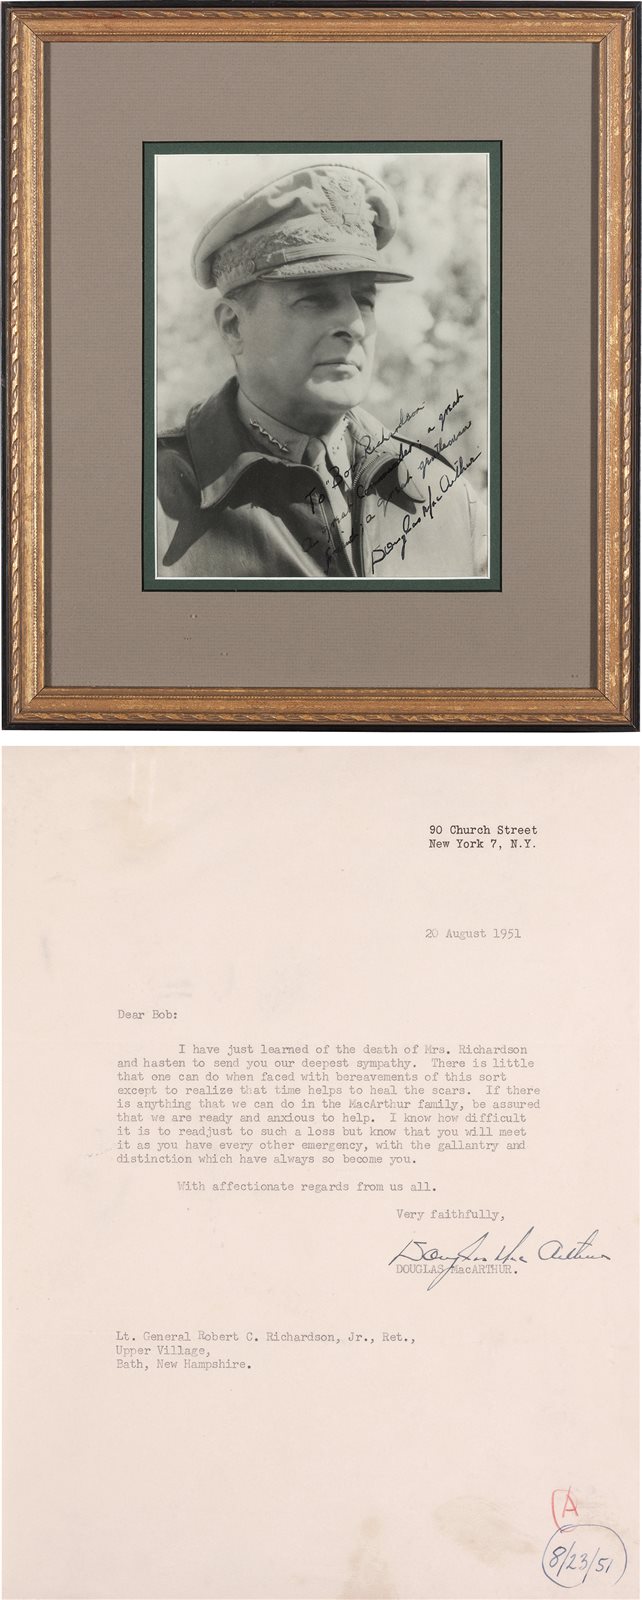 美国“五星上将”麦克阿瑟赠罗伯特·理查德森亲笔签名照片及信函各一件